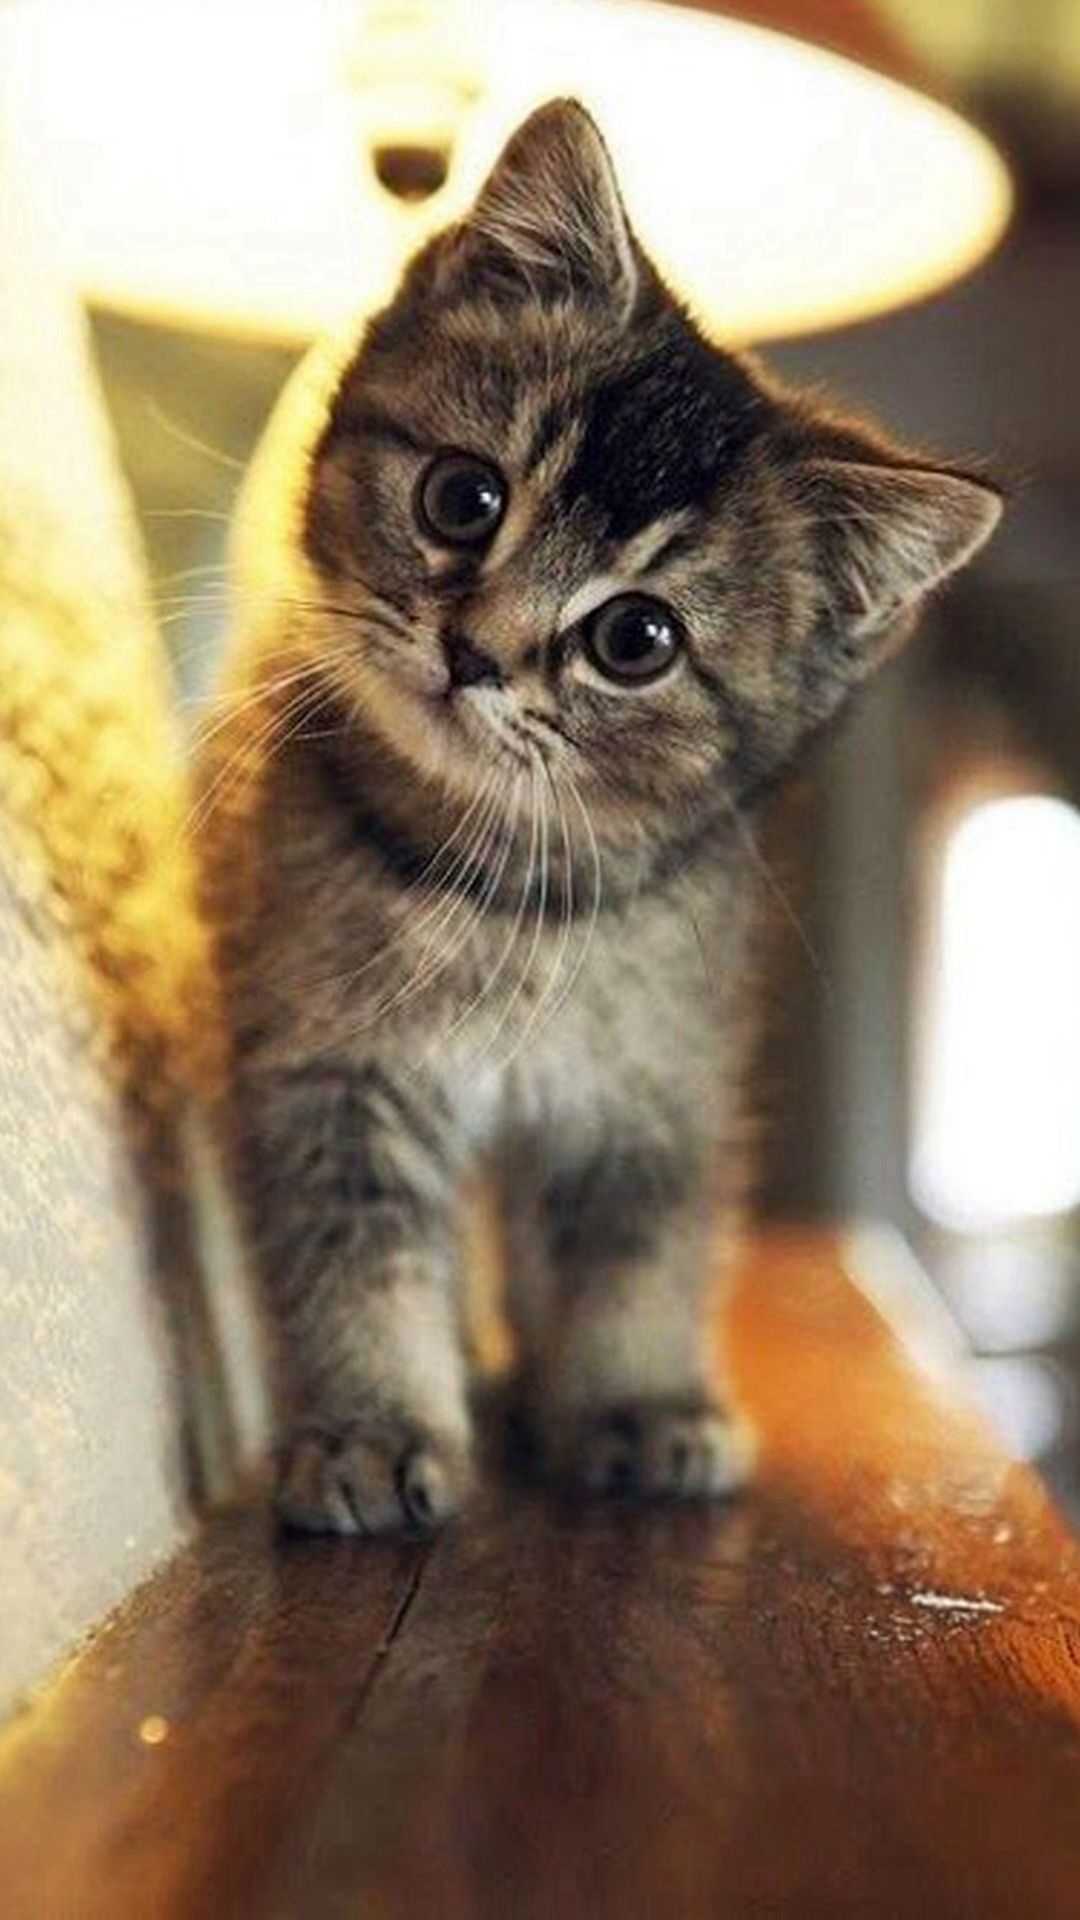 Cute little cat pic